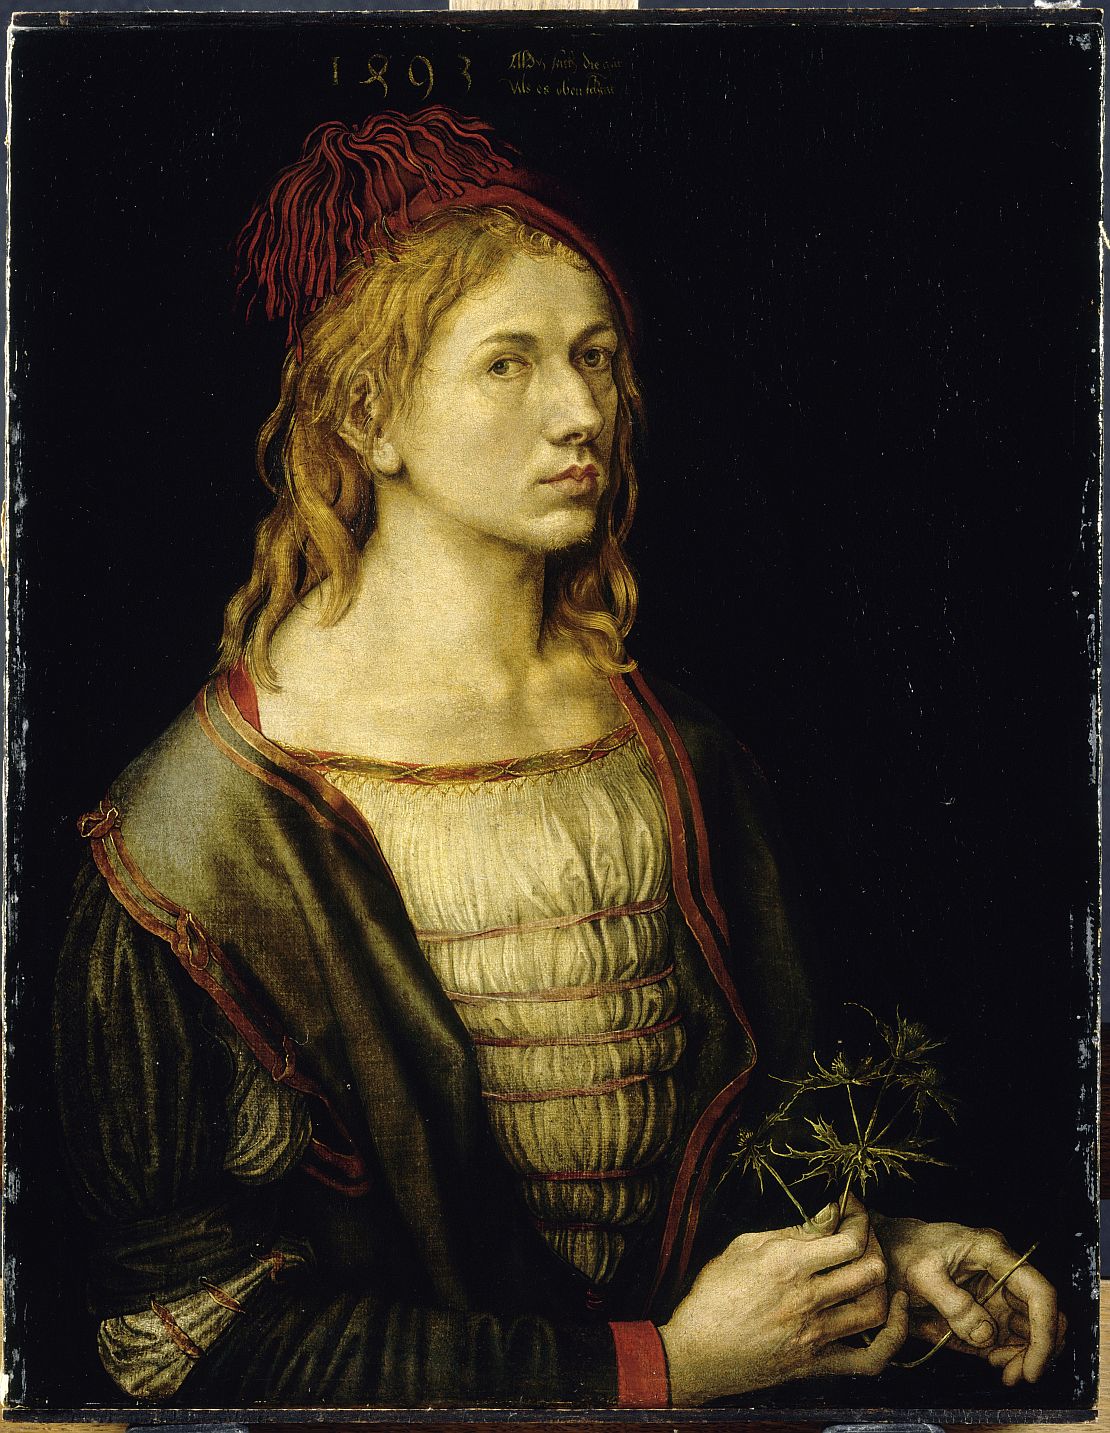 Dürers erstes gemalte Selbstporträt von 1493, heute im Musée du Louvre in Paris © bpk, RMN - Grand Palais, Jean-Gilles Berizzi